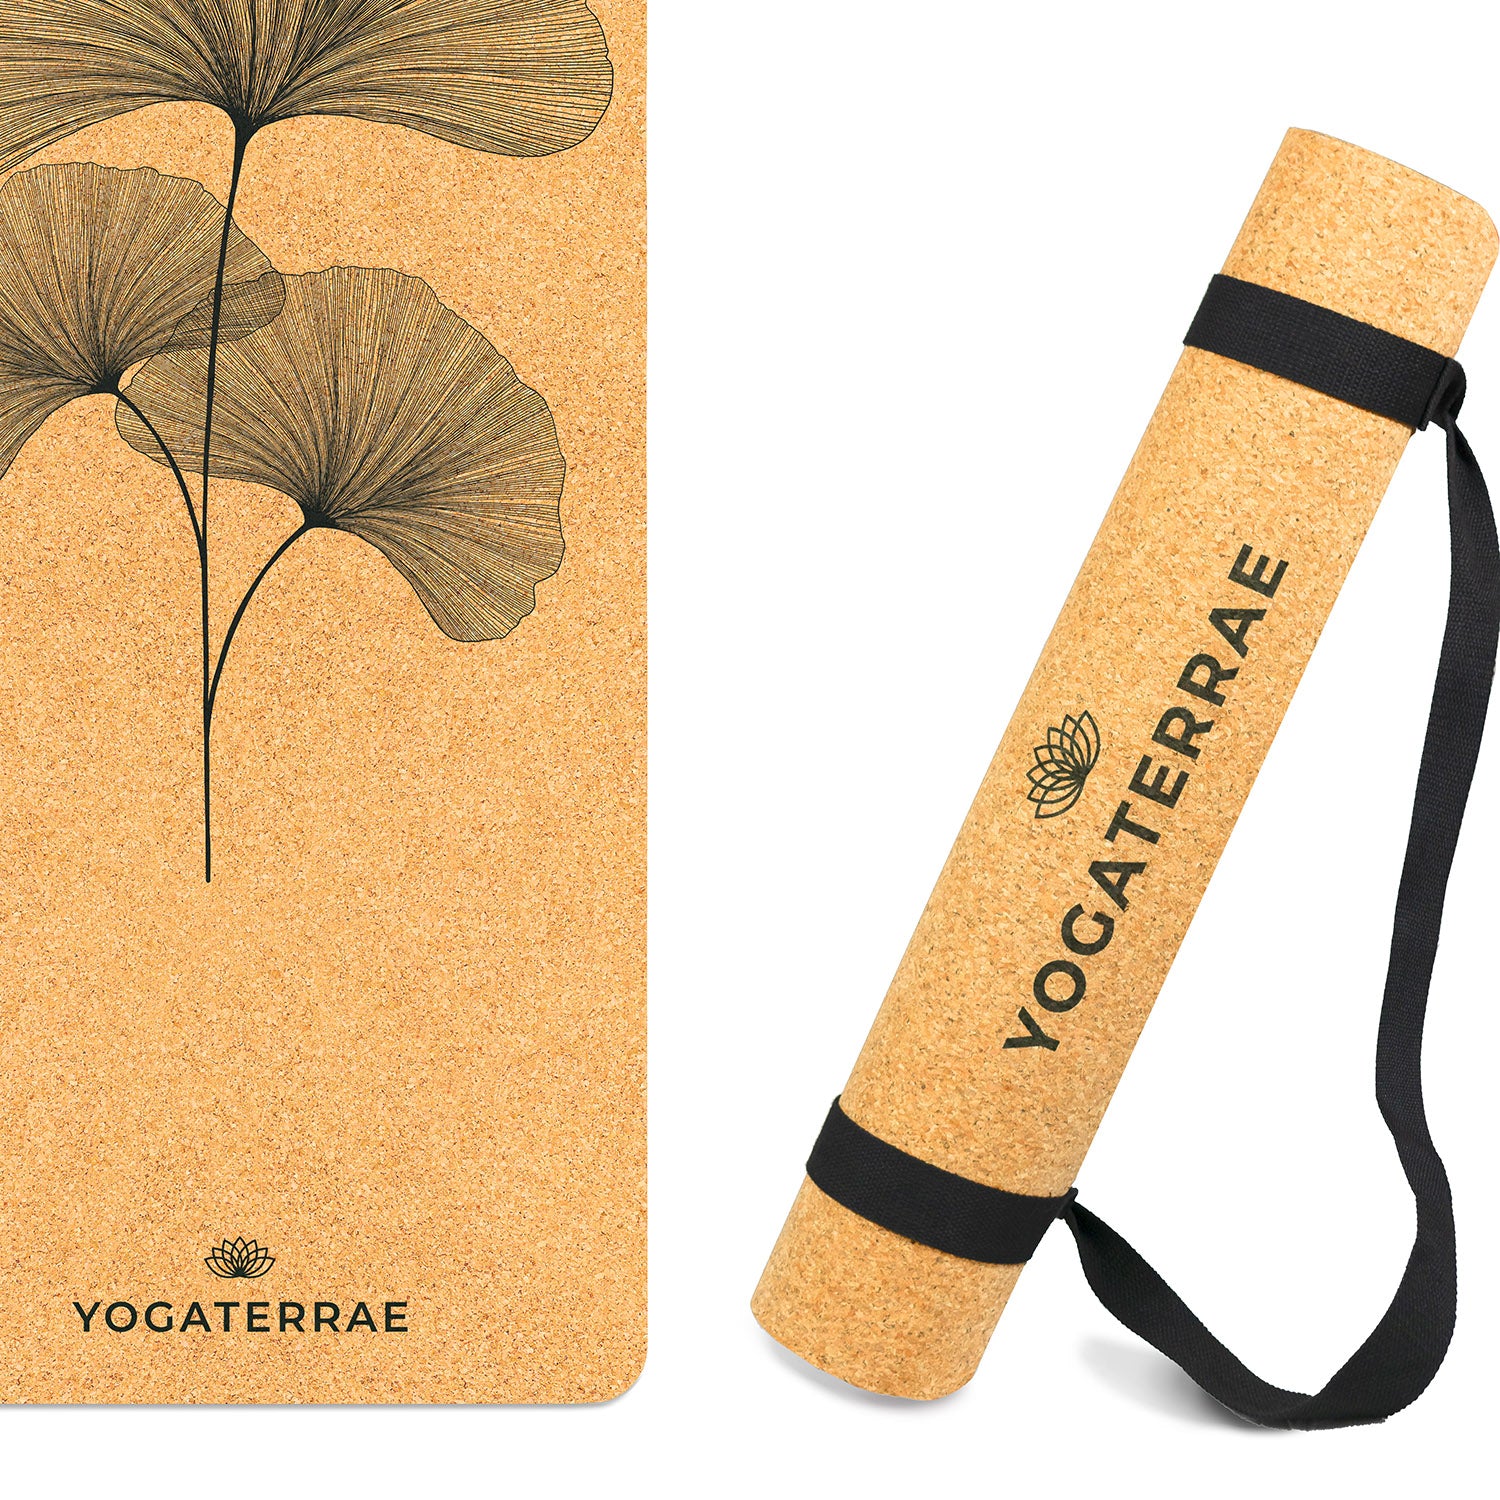 Tapis de yoga liège et caoutchouc naturels antidérapant écologique Ginkgos Bouquet + sangle d'étirements et de transport YOGATERRAE marque française